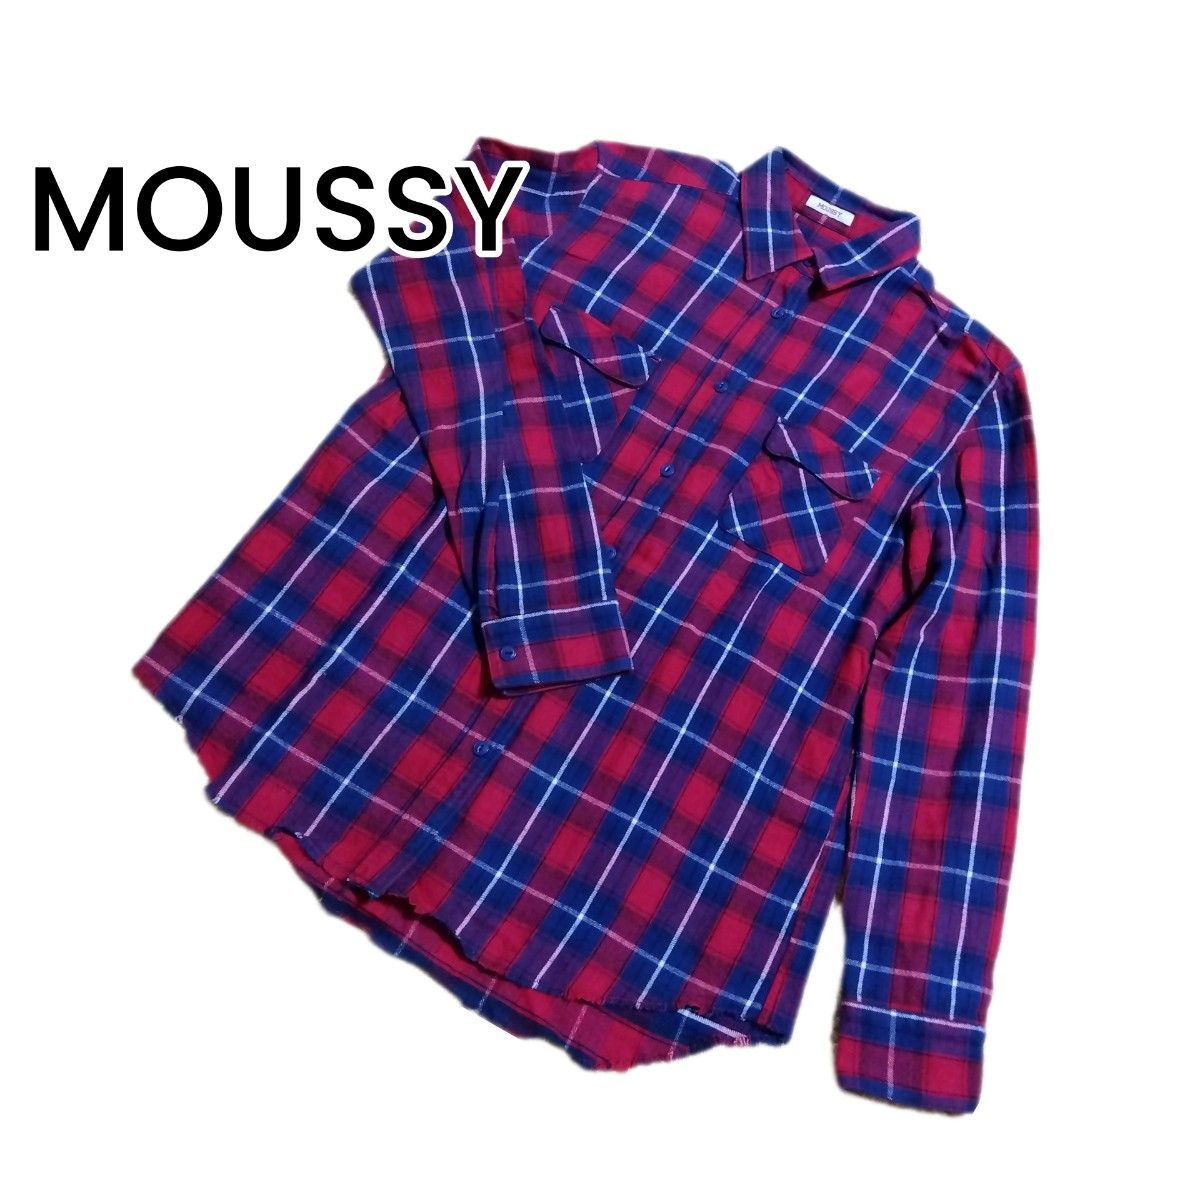 【MOUSSY】レッドチェックネルシャツ フリーサイズ